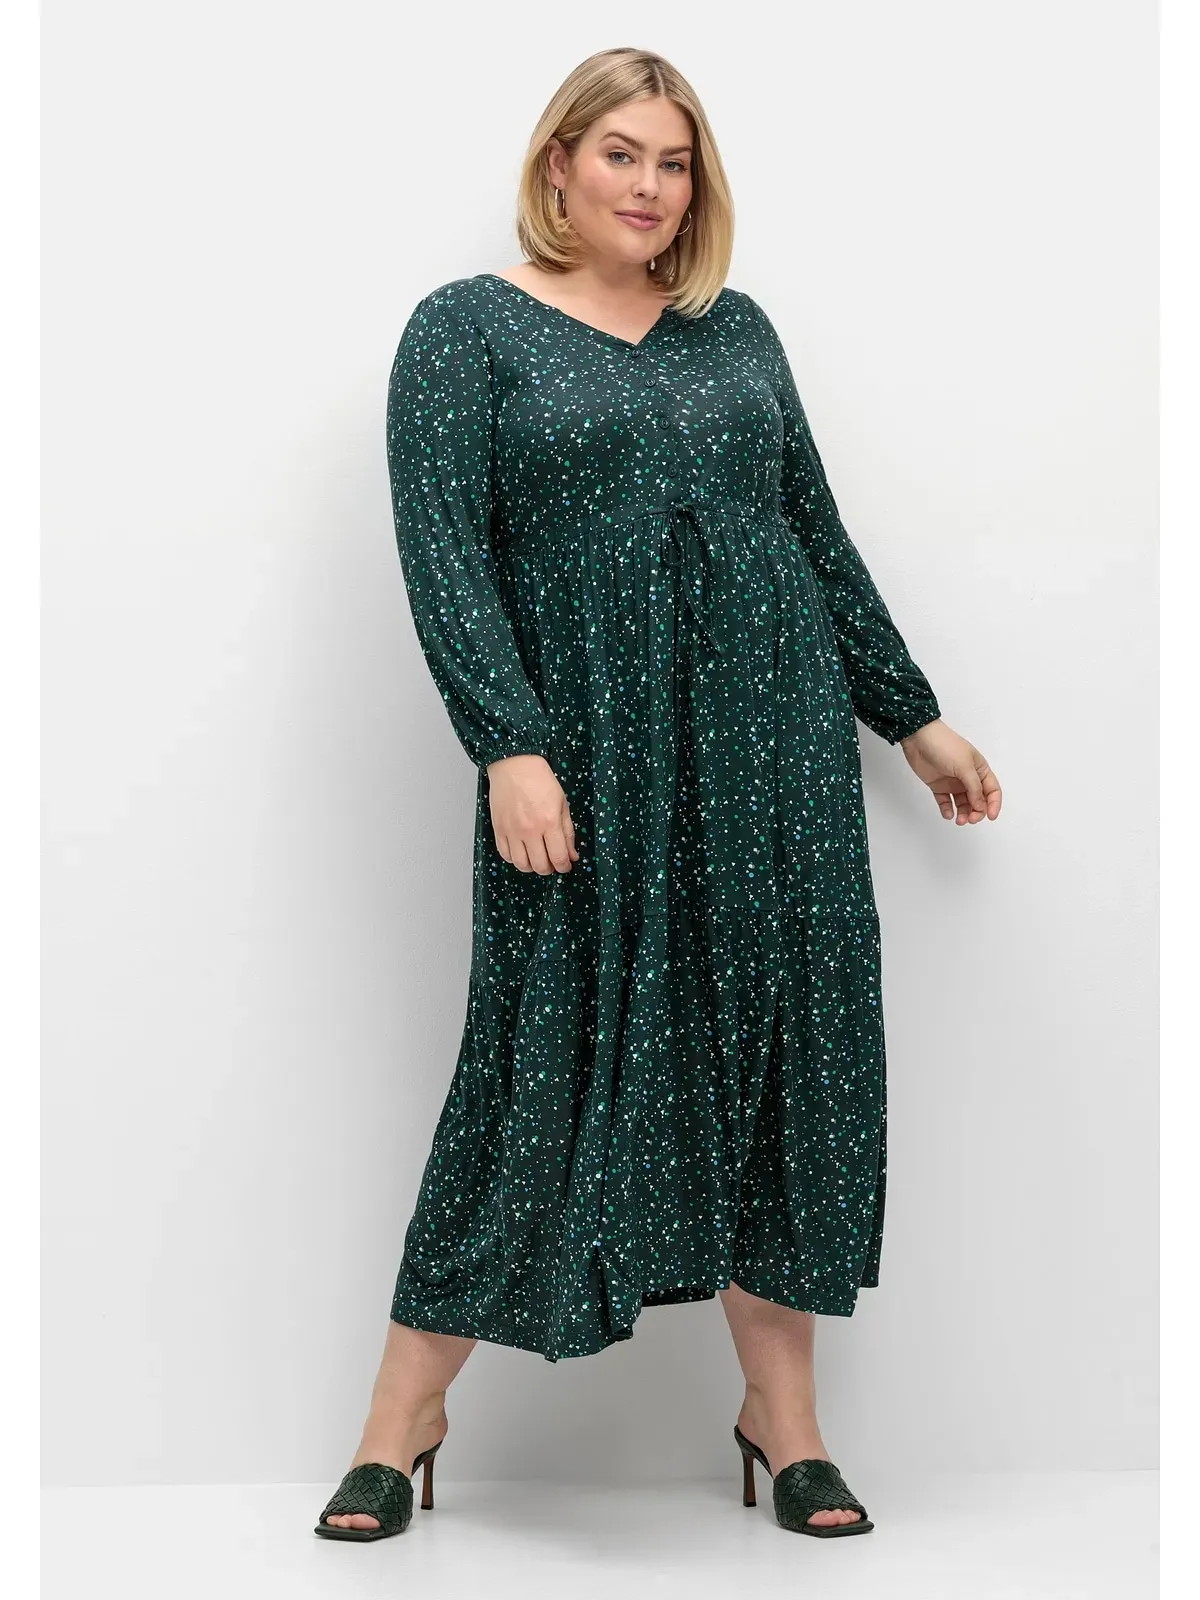 Jerseykleid SHEEGO "Große Größen" Gr. 50, Normalgrößen, grün (tiefgrün gemustert) Damen Kleider Freizeitkleider